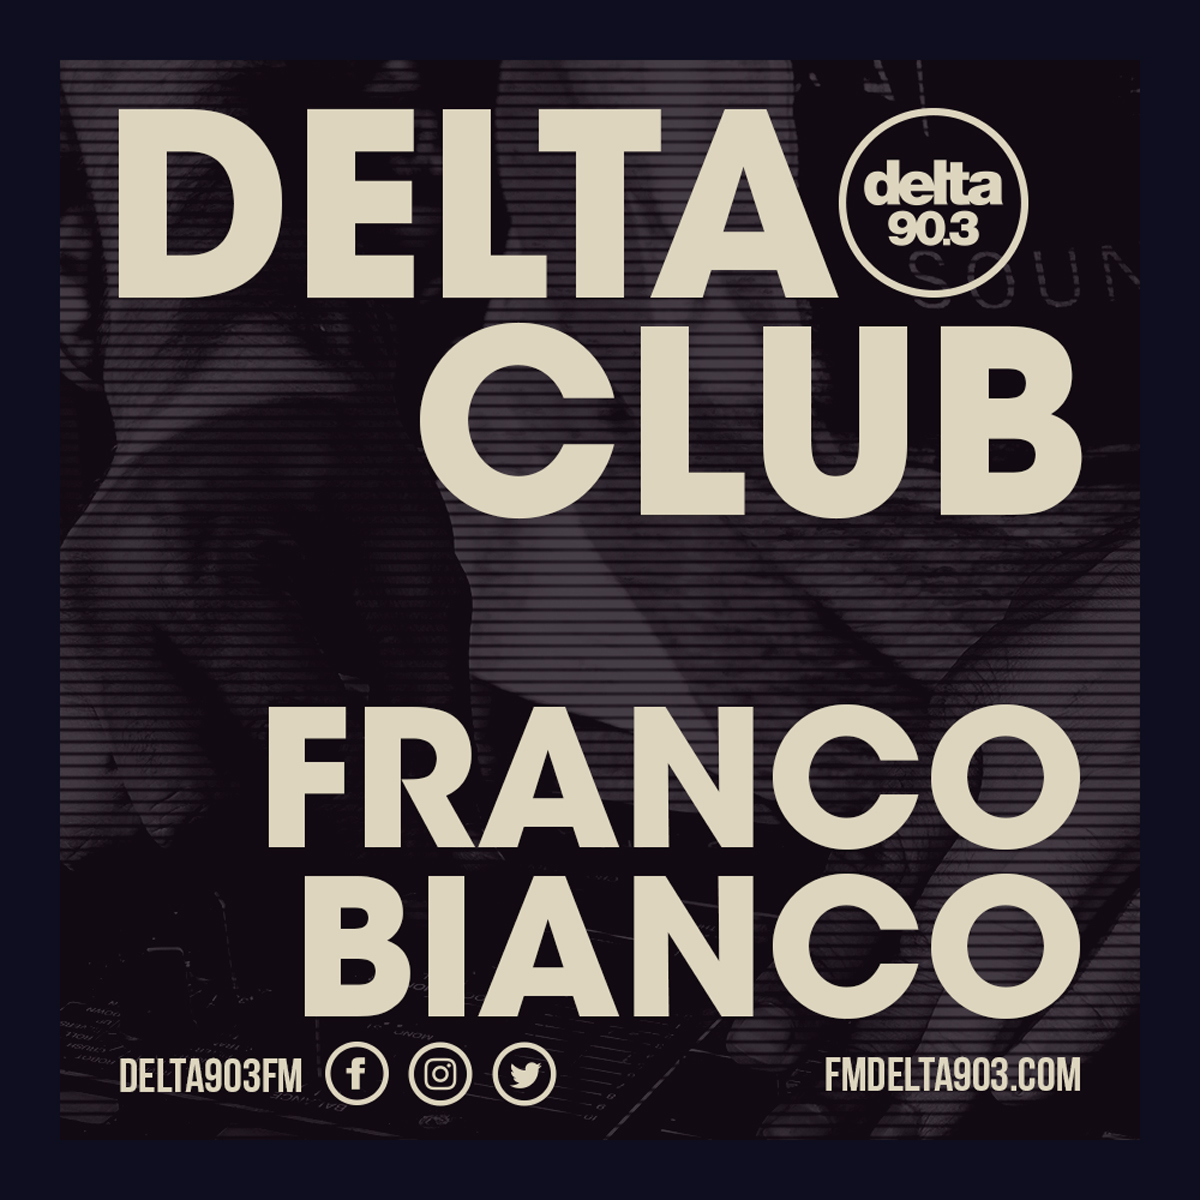 Delta Podcasts - Delta Club presents Franco Bianco (01.05.2018)